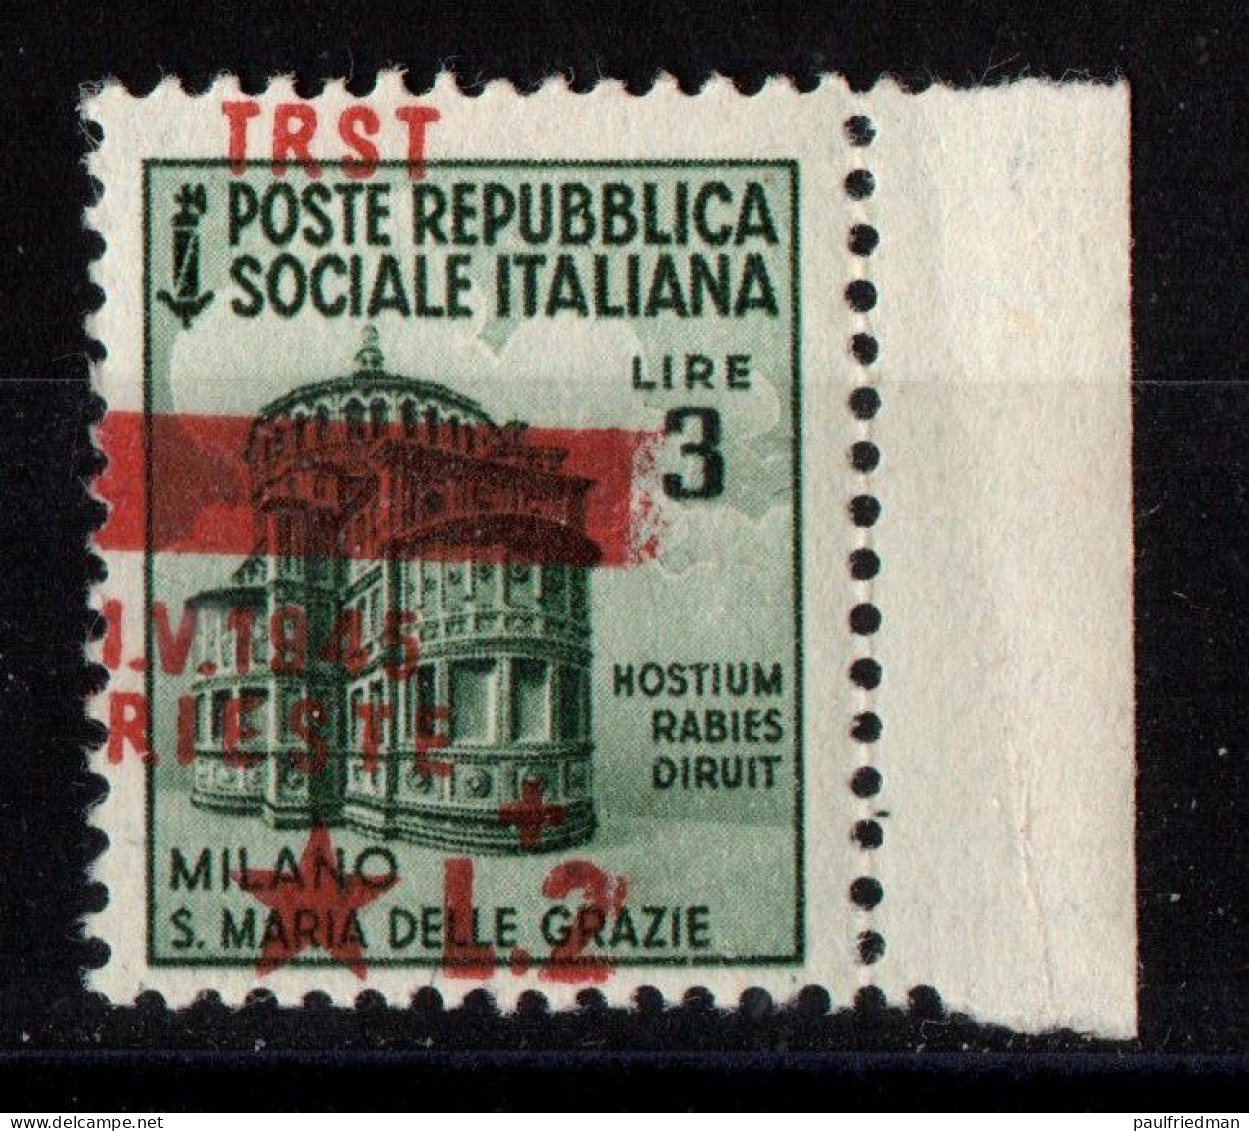 Occ. Jugoslava Trieste 1945 - Monum. Distrutti  3+2 Lire - Sopr. Spostata A Sinistra In Basso (TRST In Alto) - MNH** - Occ. Yougoslave: Trieste